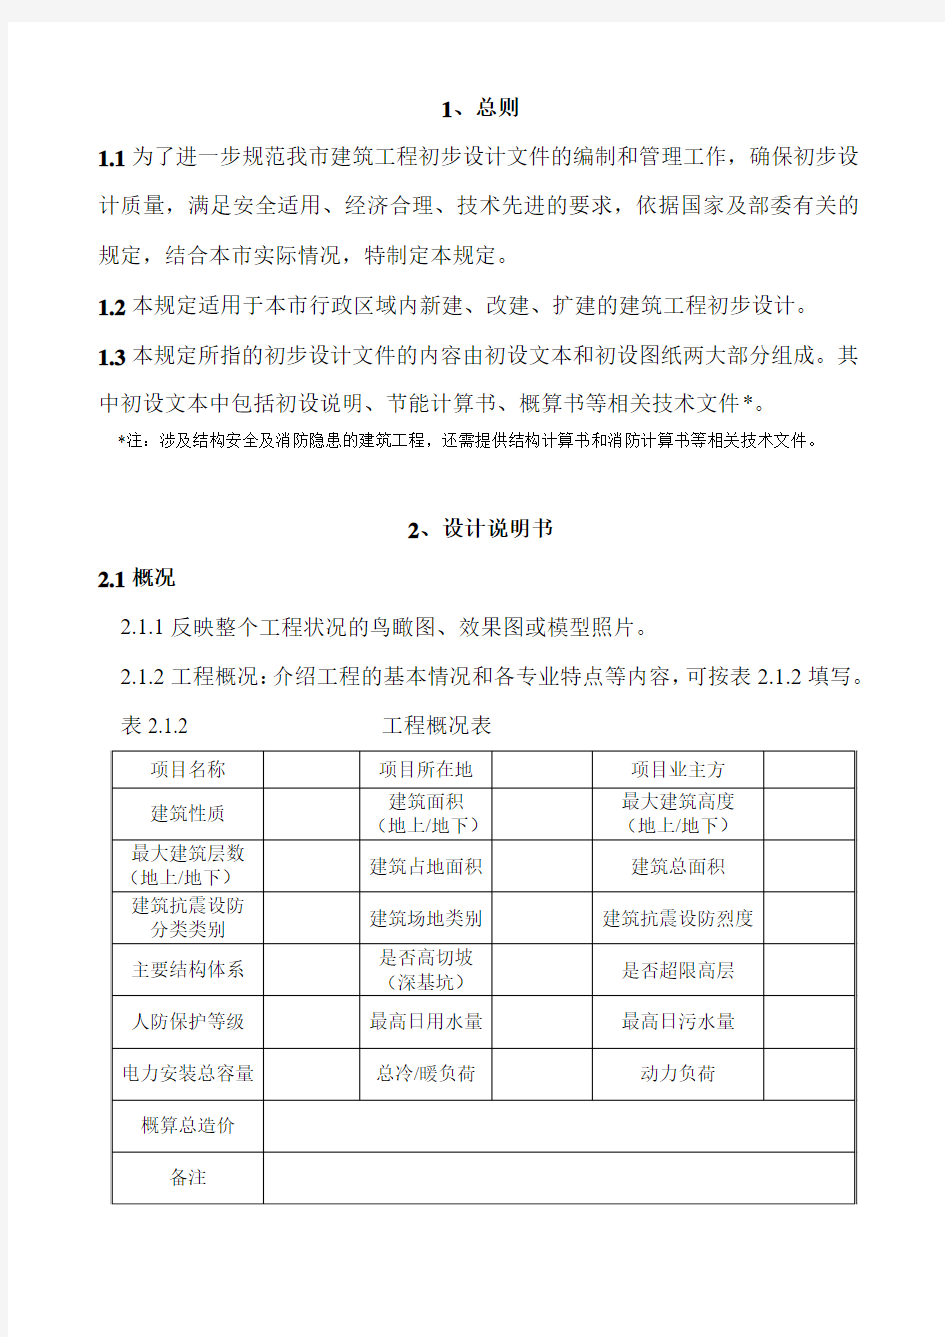 《重庆市建筑工程初步设计文件编制技术规定》渝建发[2009]126号